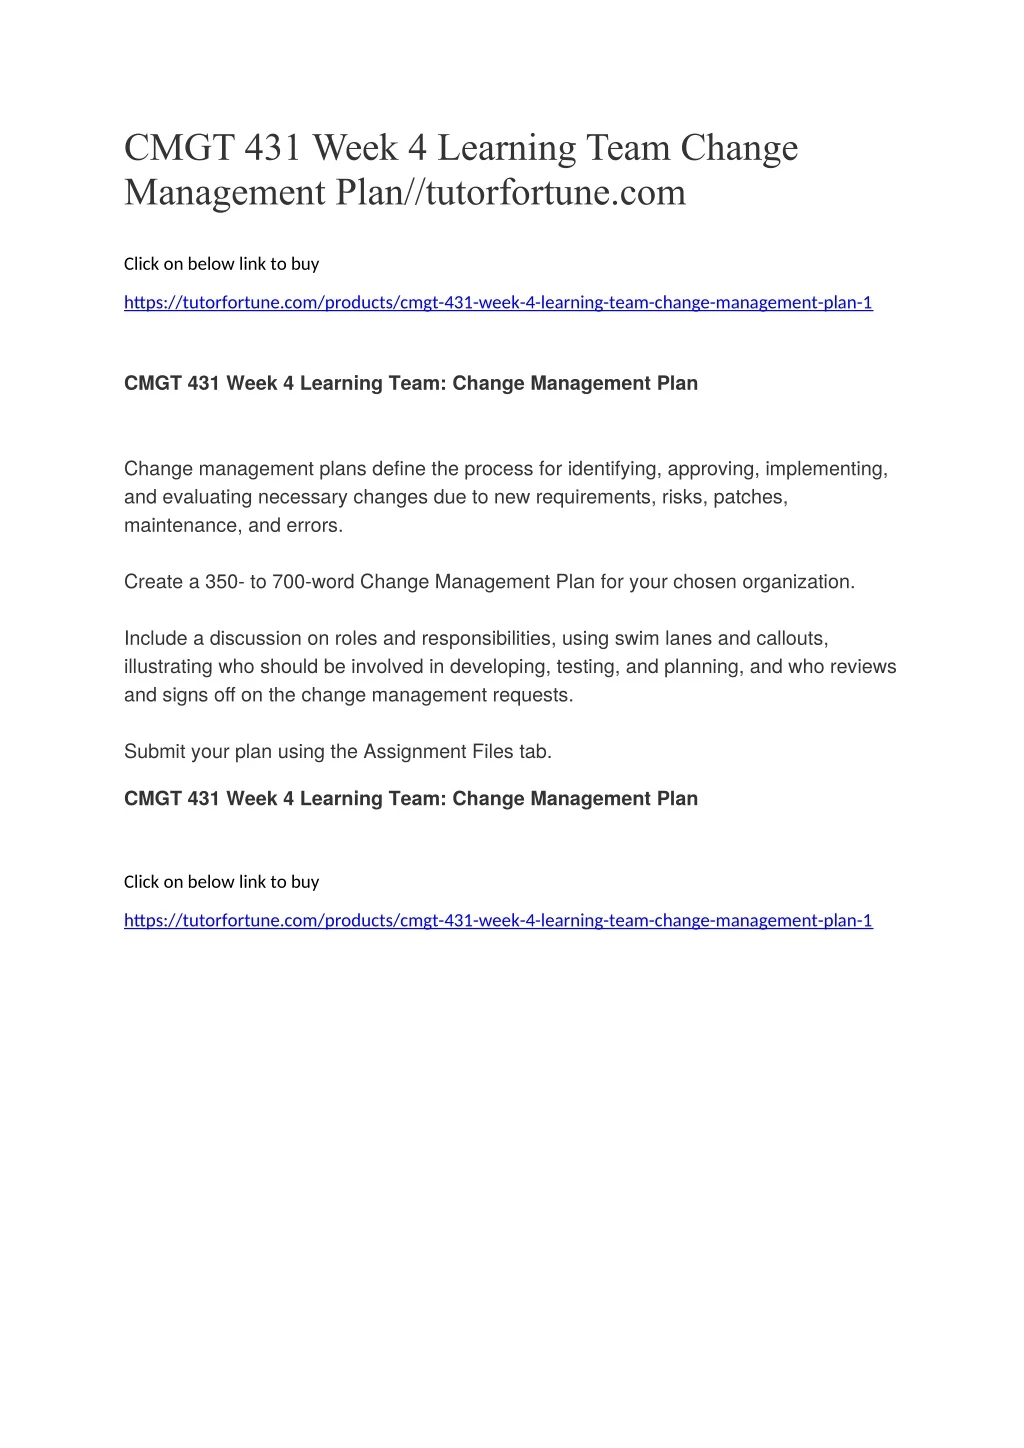 cmgt 431 week 4 learning team change management